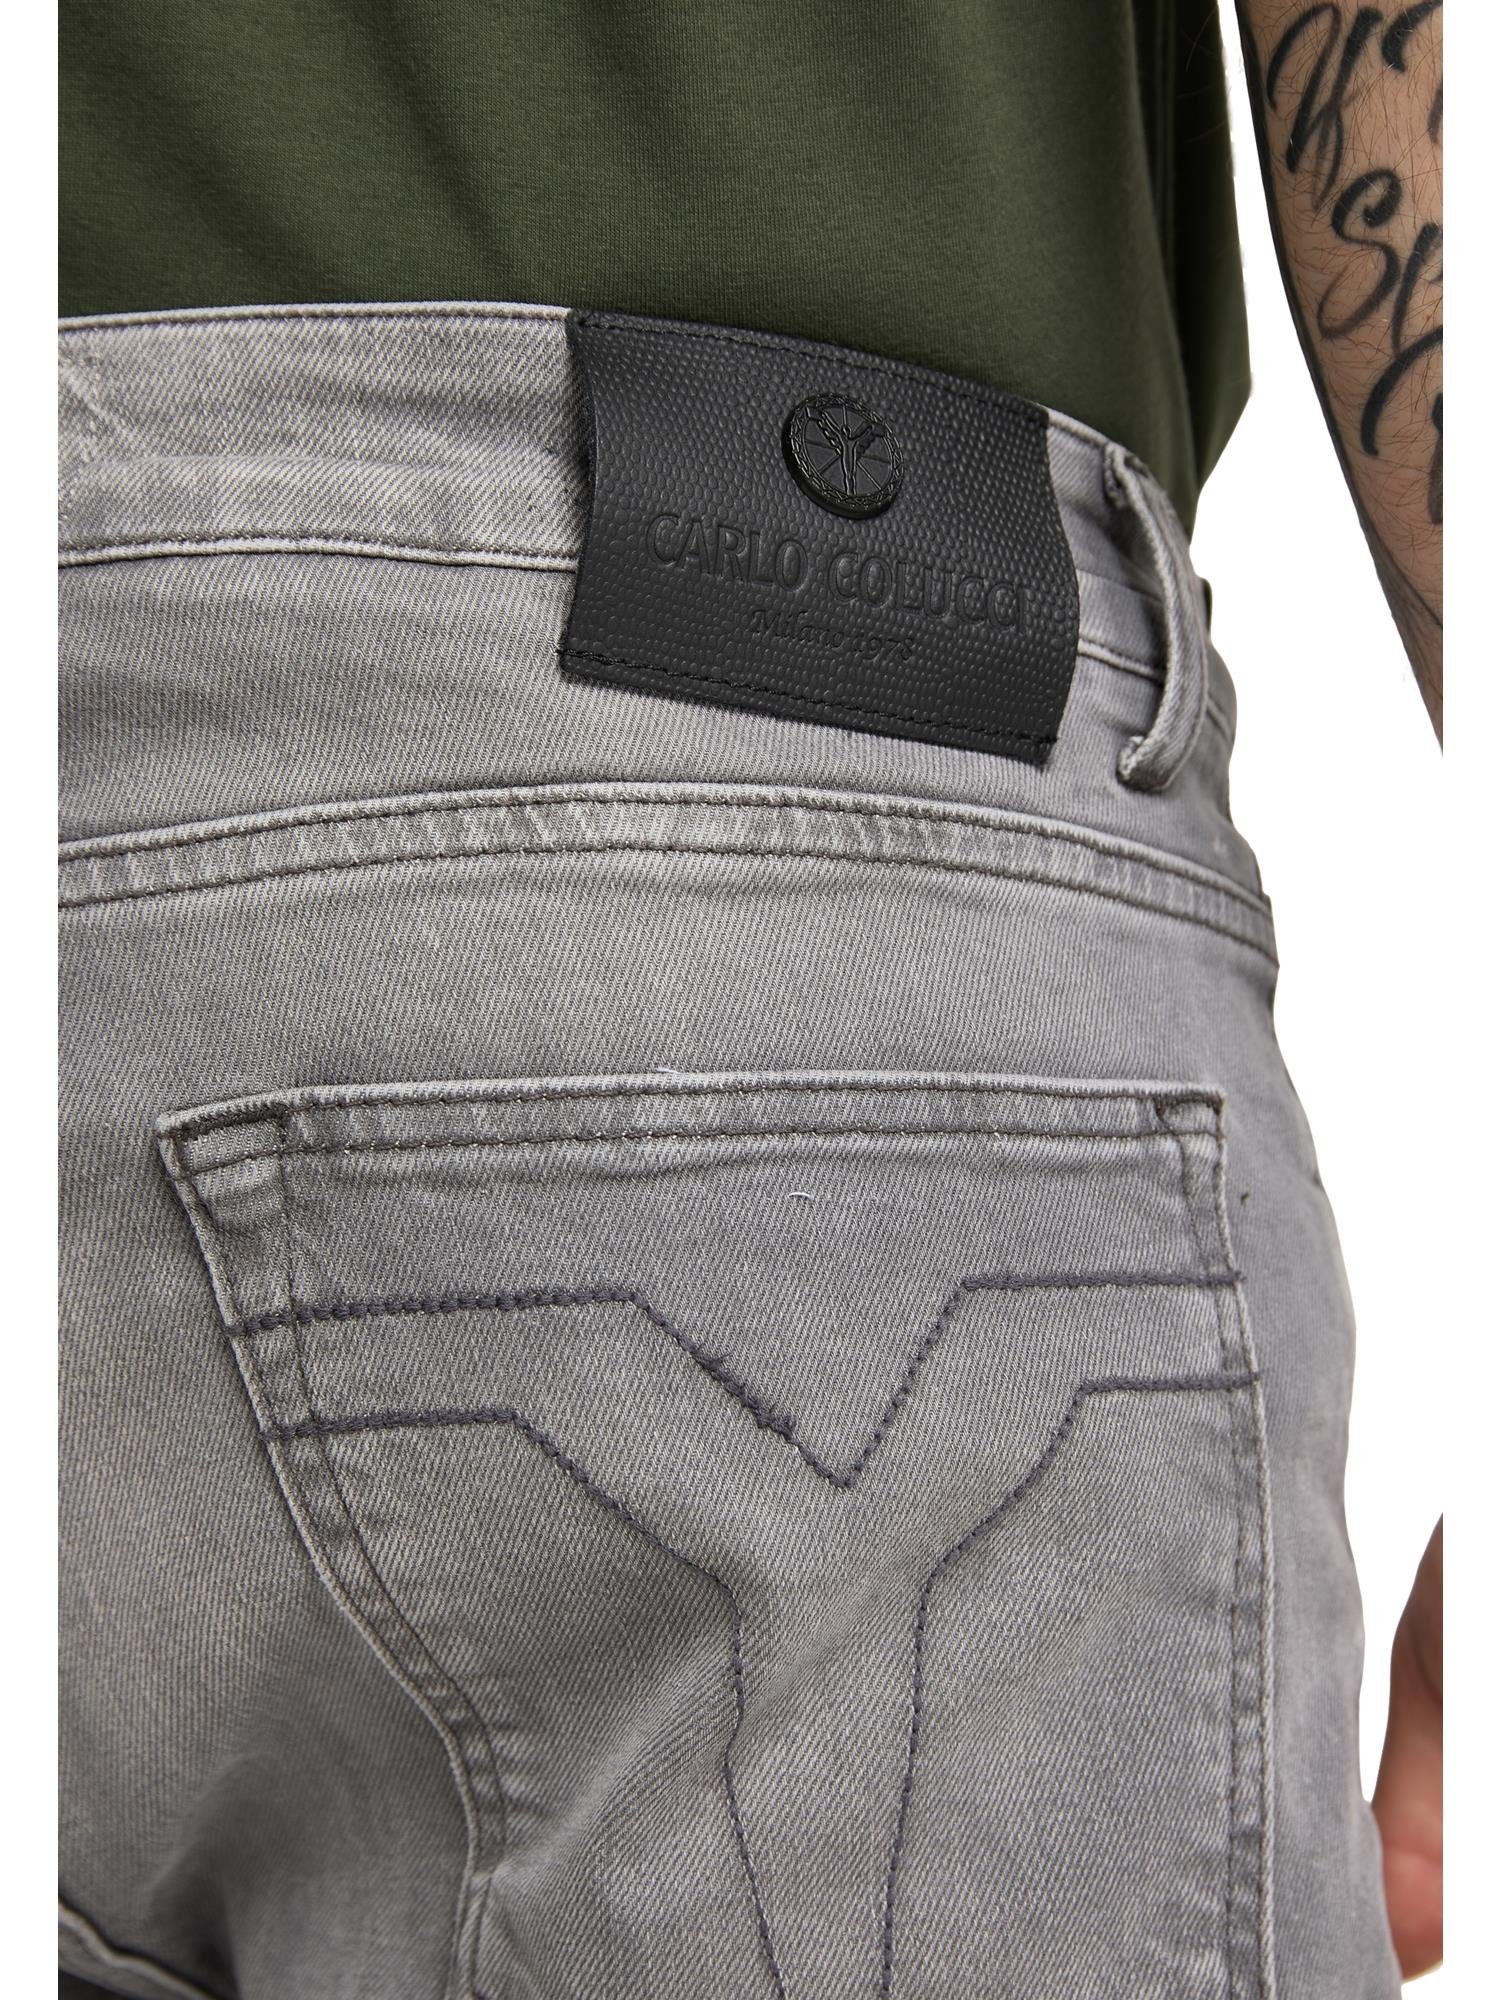 Cazzolla CARLO 32W 5-Pocket-Jeans COLUCCI